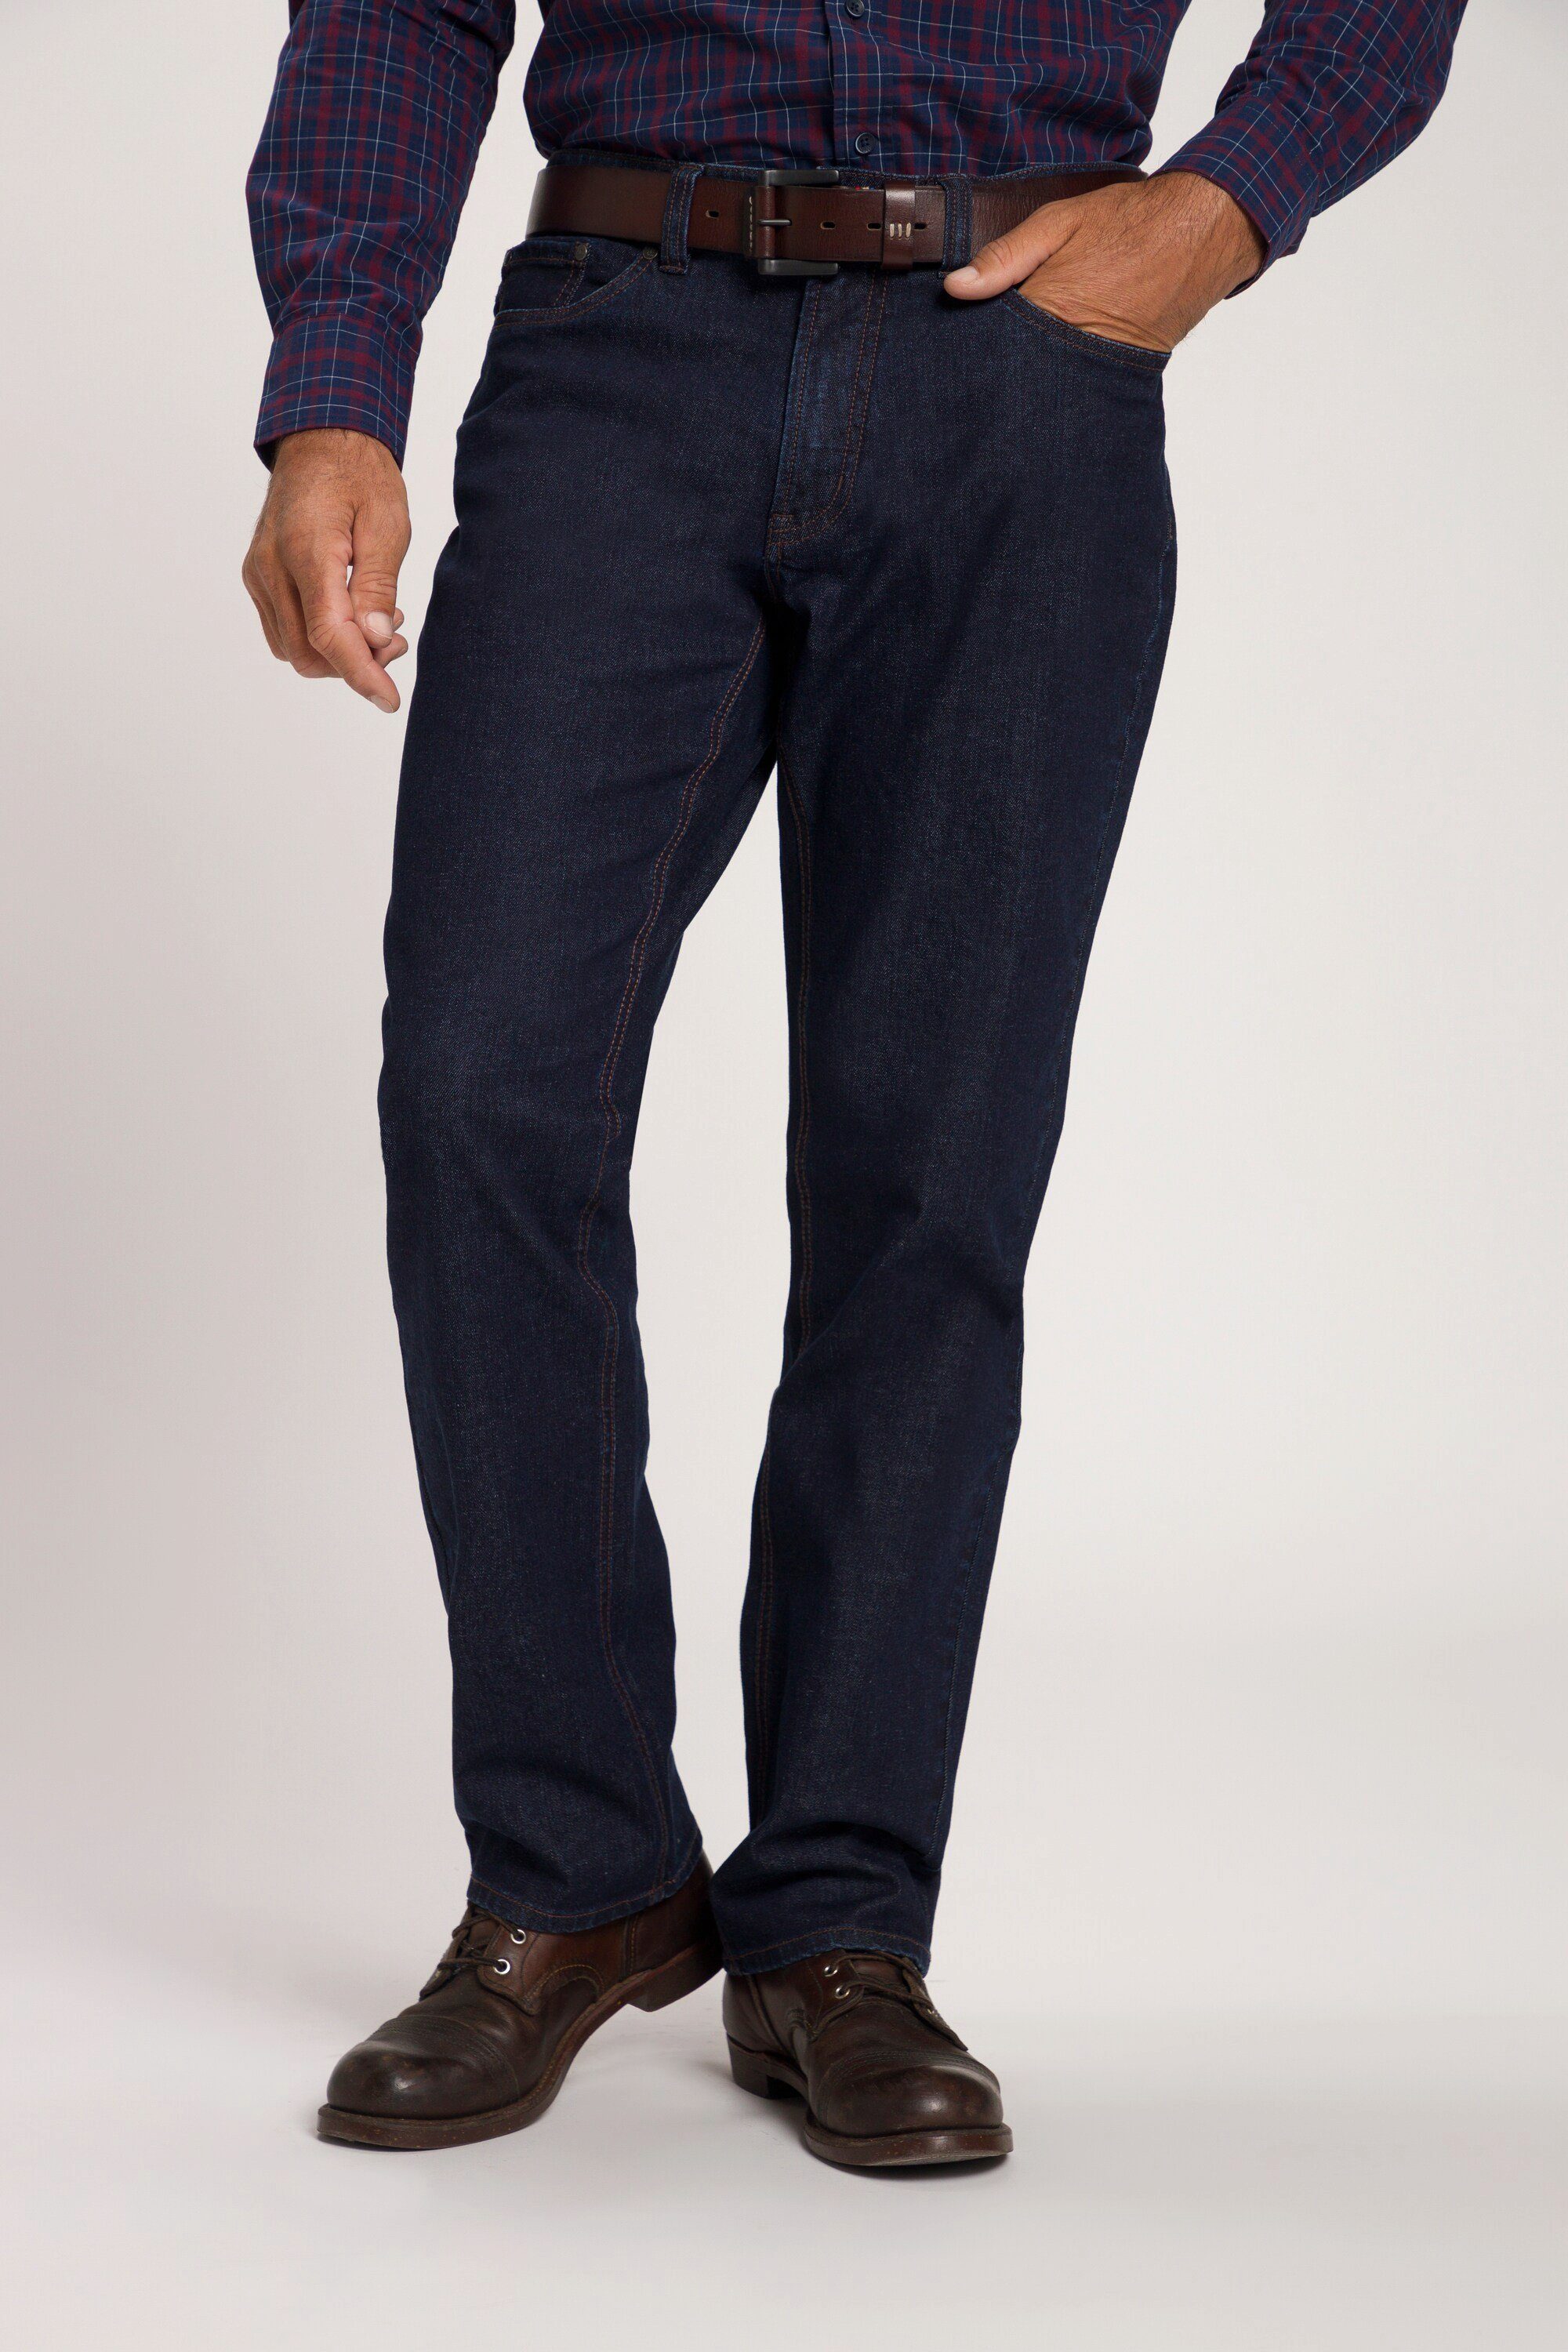 JP1880 Cargohose Jeans 5-Pocket Regular Fit bis Gr. 70/35 dark blue denim